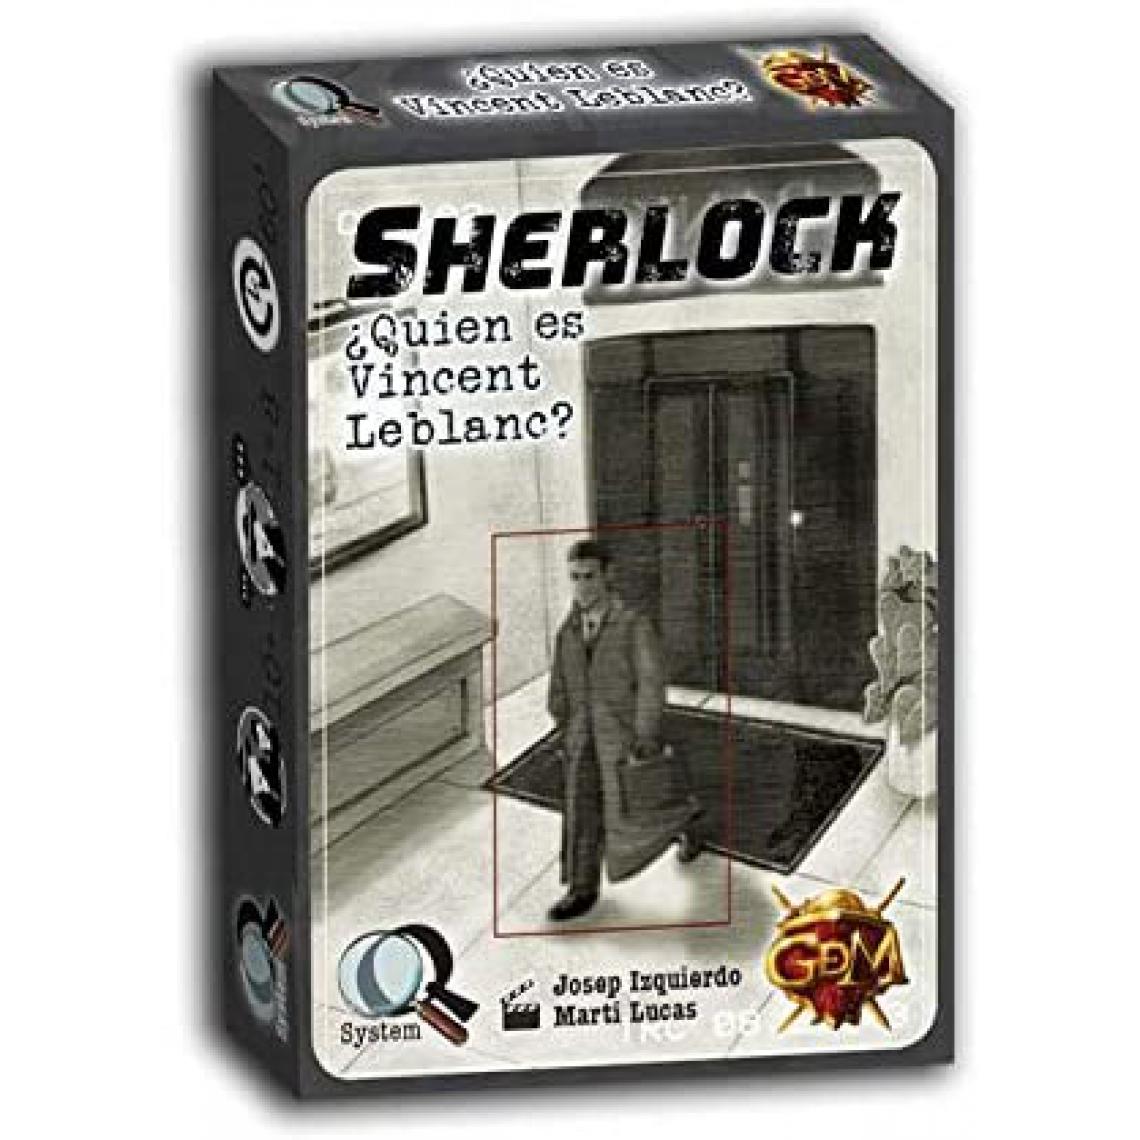 Inconnu - GM Games - Sherlock : Qui est Vincent Leblanc Jeu de Recherche, Couleur Gris (GDM Games GDM2096) - Jeux de cartes